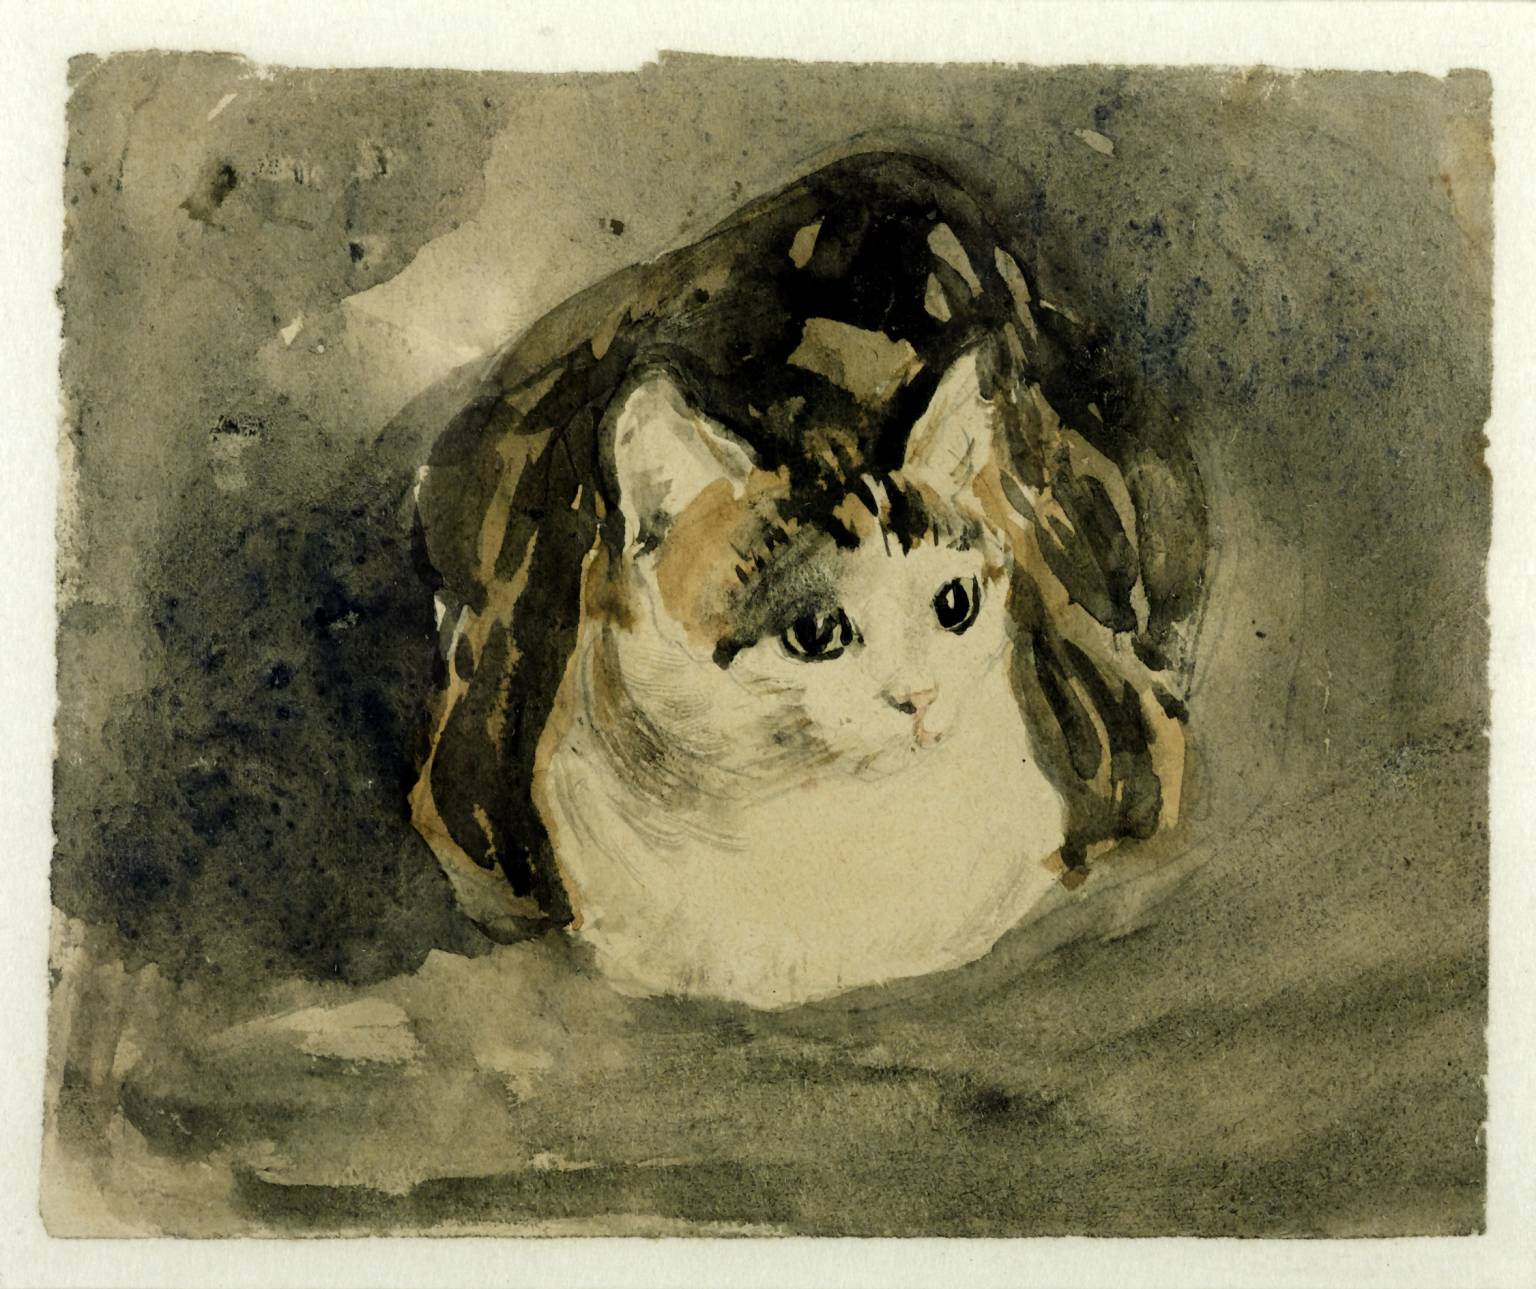 Le chat by Gwen John - 1908 -  111 x 137 mm 